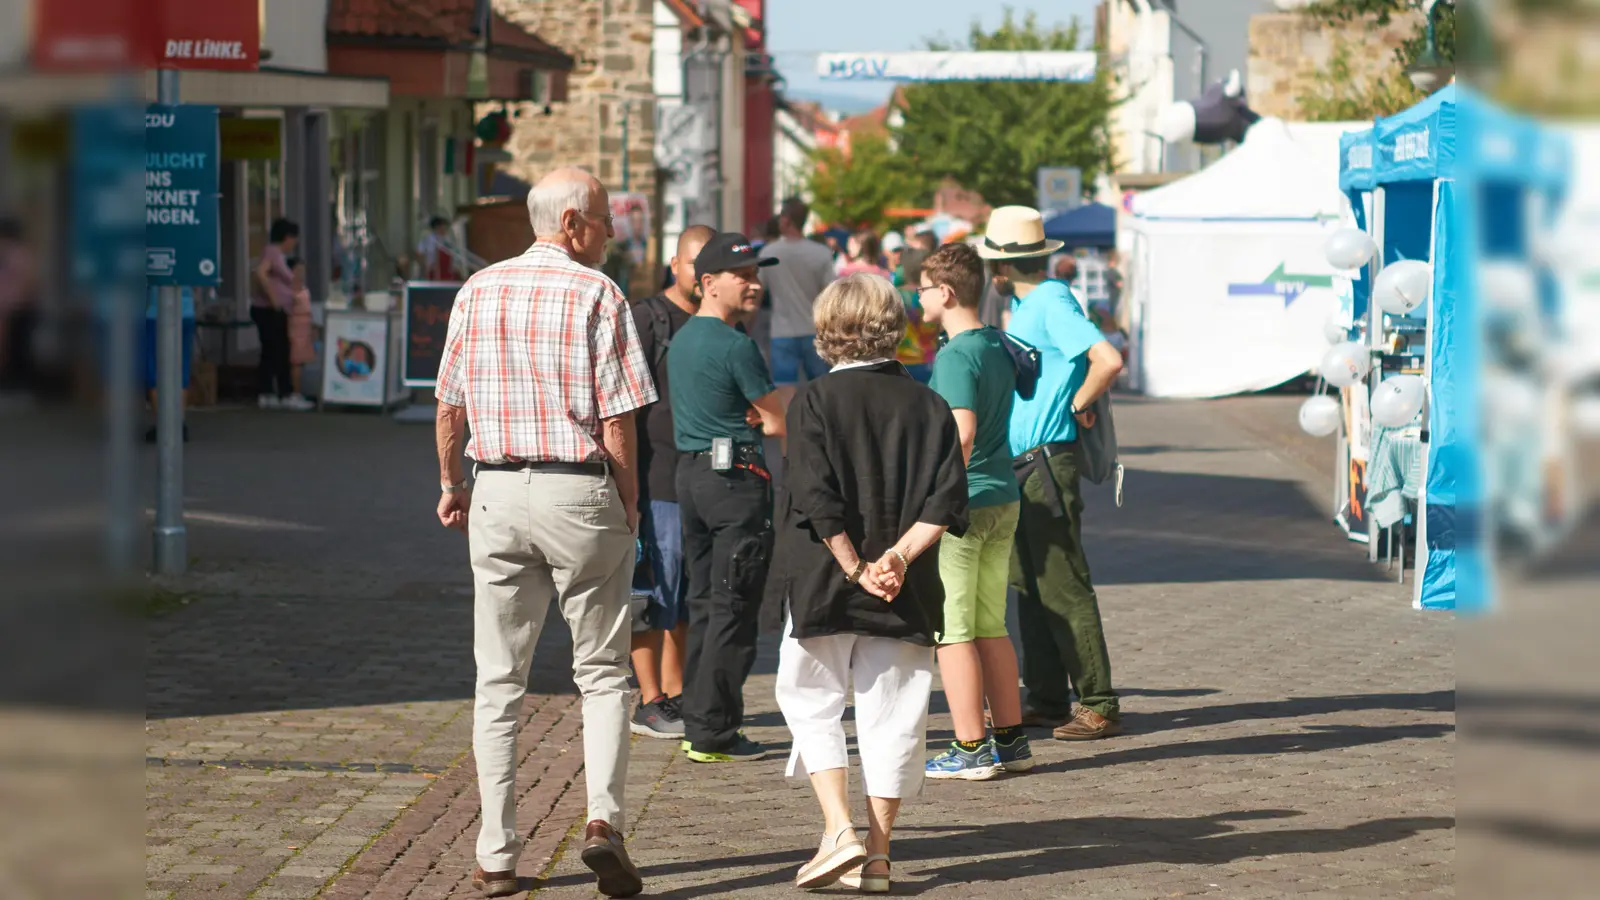 Die Stadt Immenhausen beendete ihre Veranstaltungsreihe zum 900-jährigen Stadtjubiläum mit einer Aktionsmeile. Bereits zu Beginn waren schon viele Besucher auf der Meile unterwegs und entdeckten das vielfältige Angebot. (Foto: Stefan Bönning)